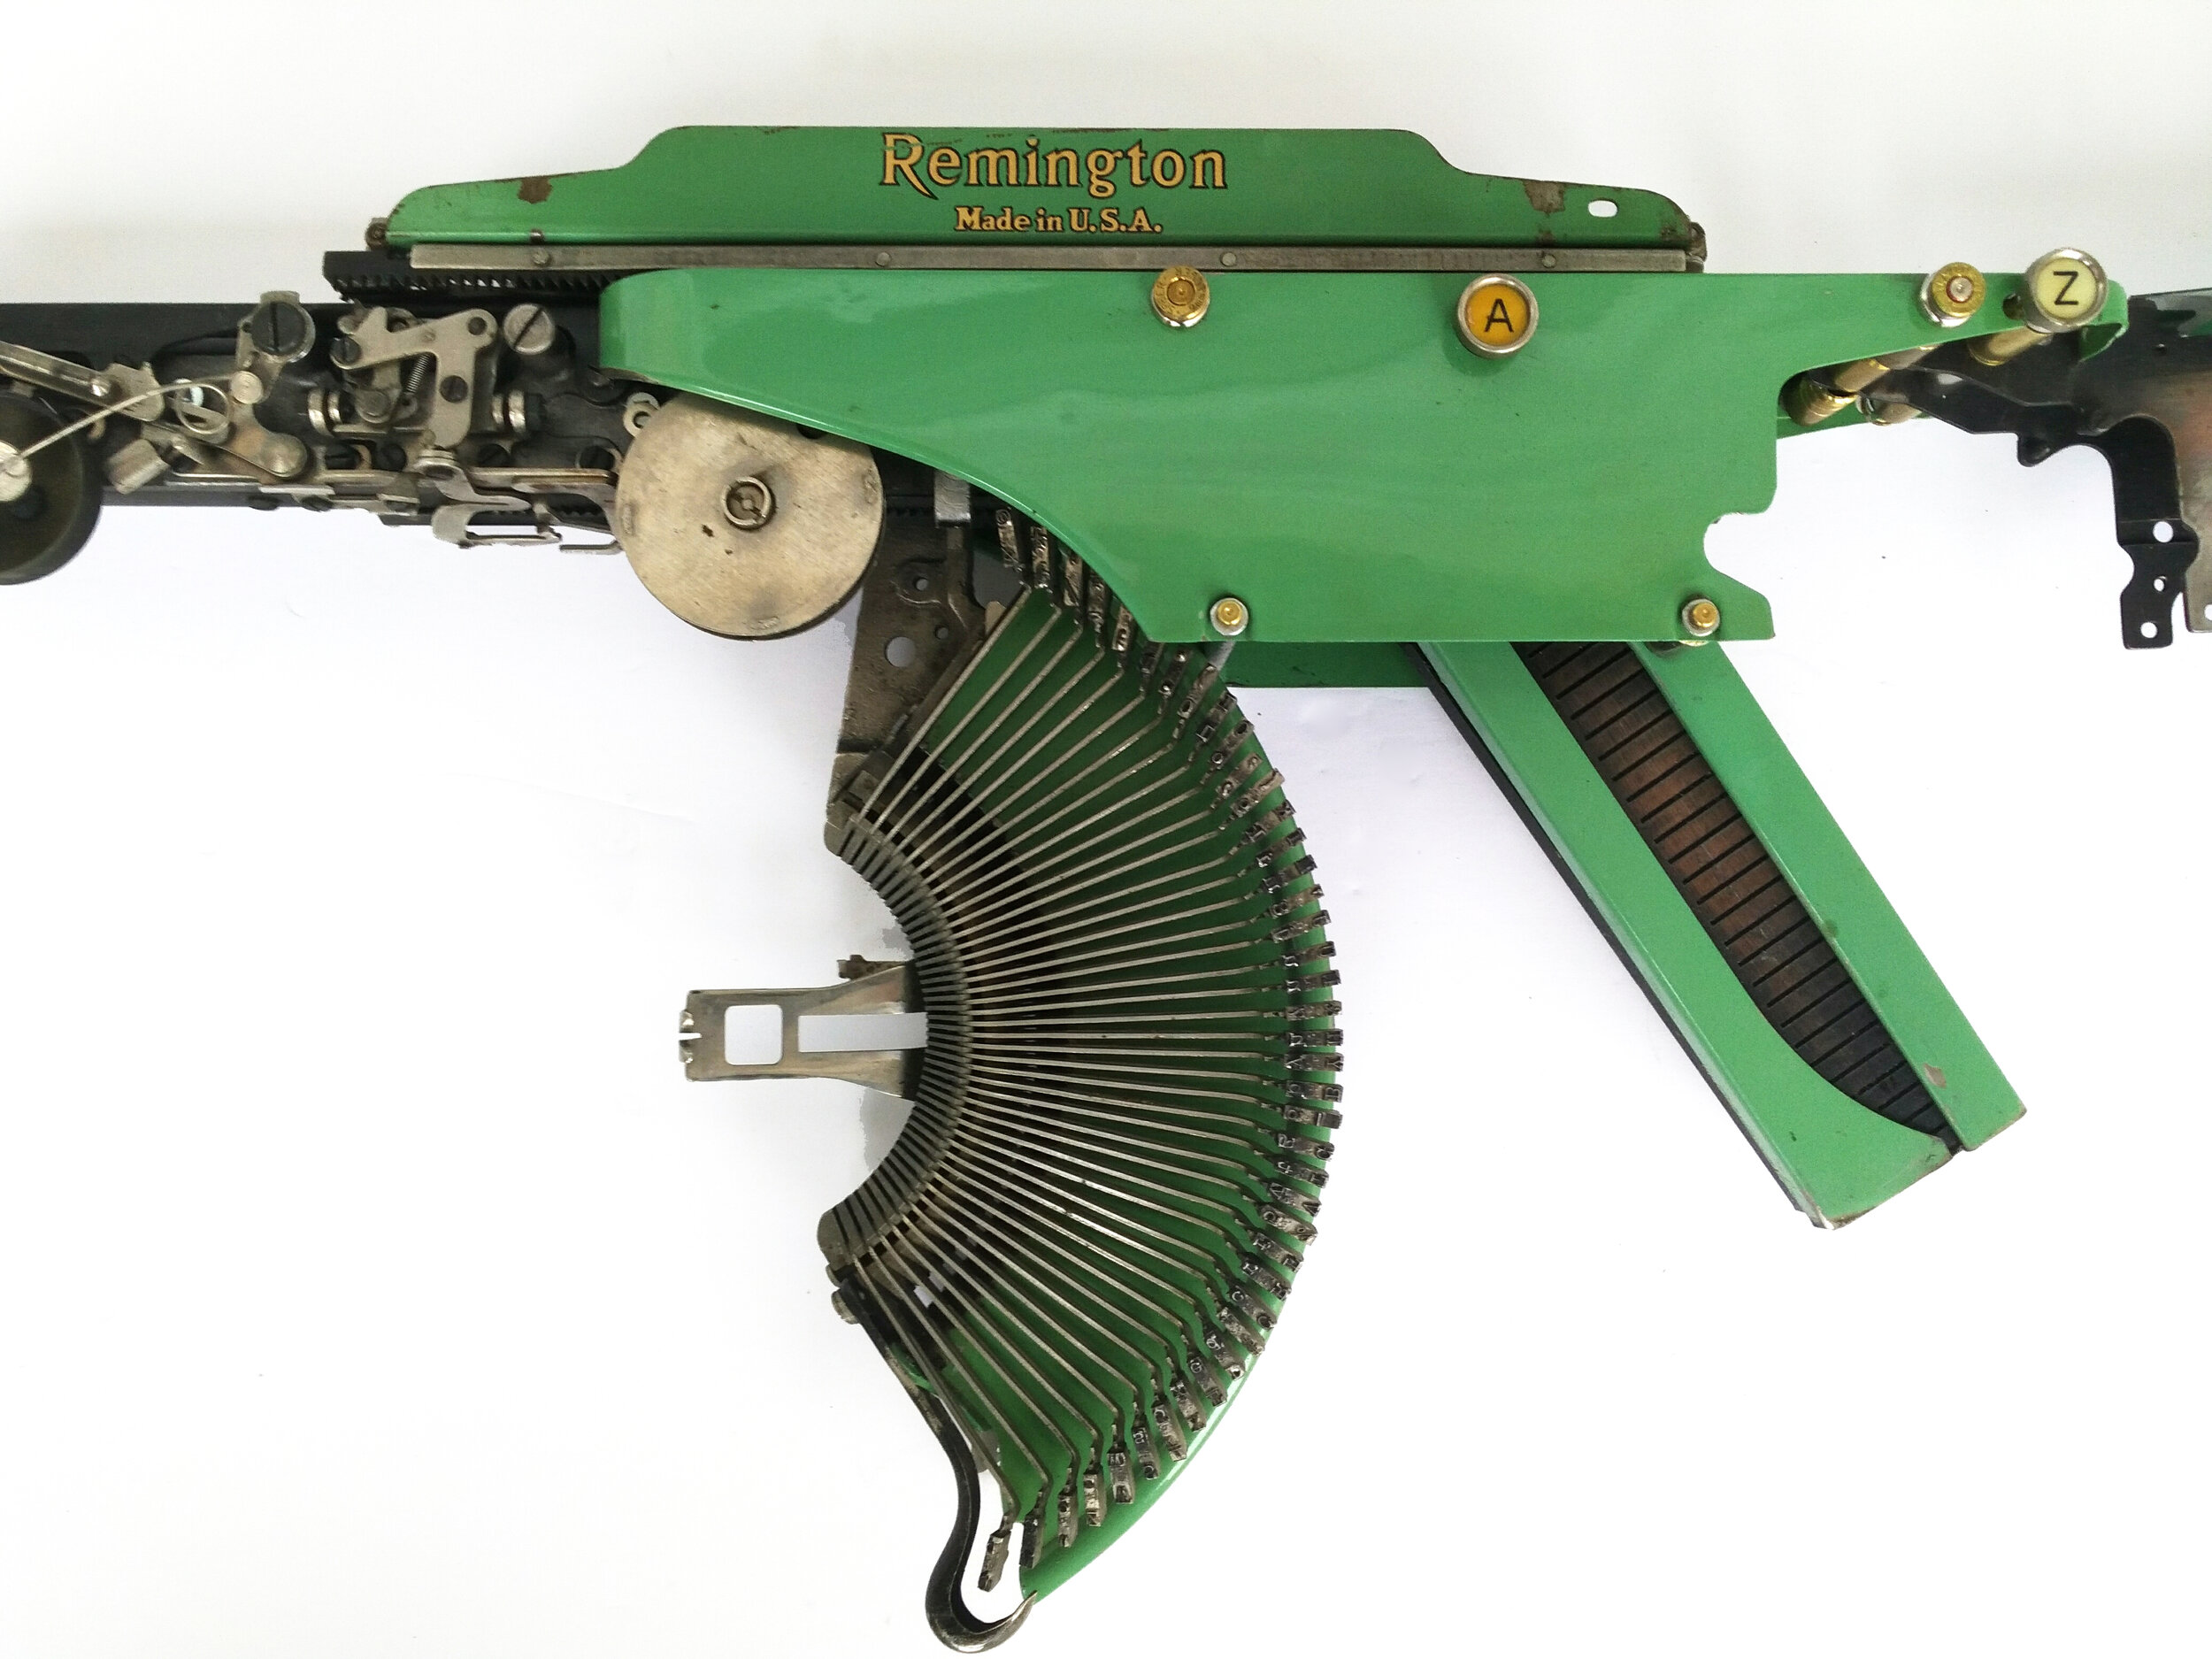  Eric Nado  - Rem Green AZ TAB  (detail) - Typewriter MachineGun series- Size: 11" x 30" x 3” inches. Transformed vintage Remington typewriter gun - SOLD 